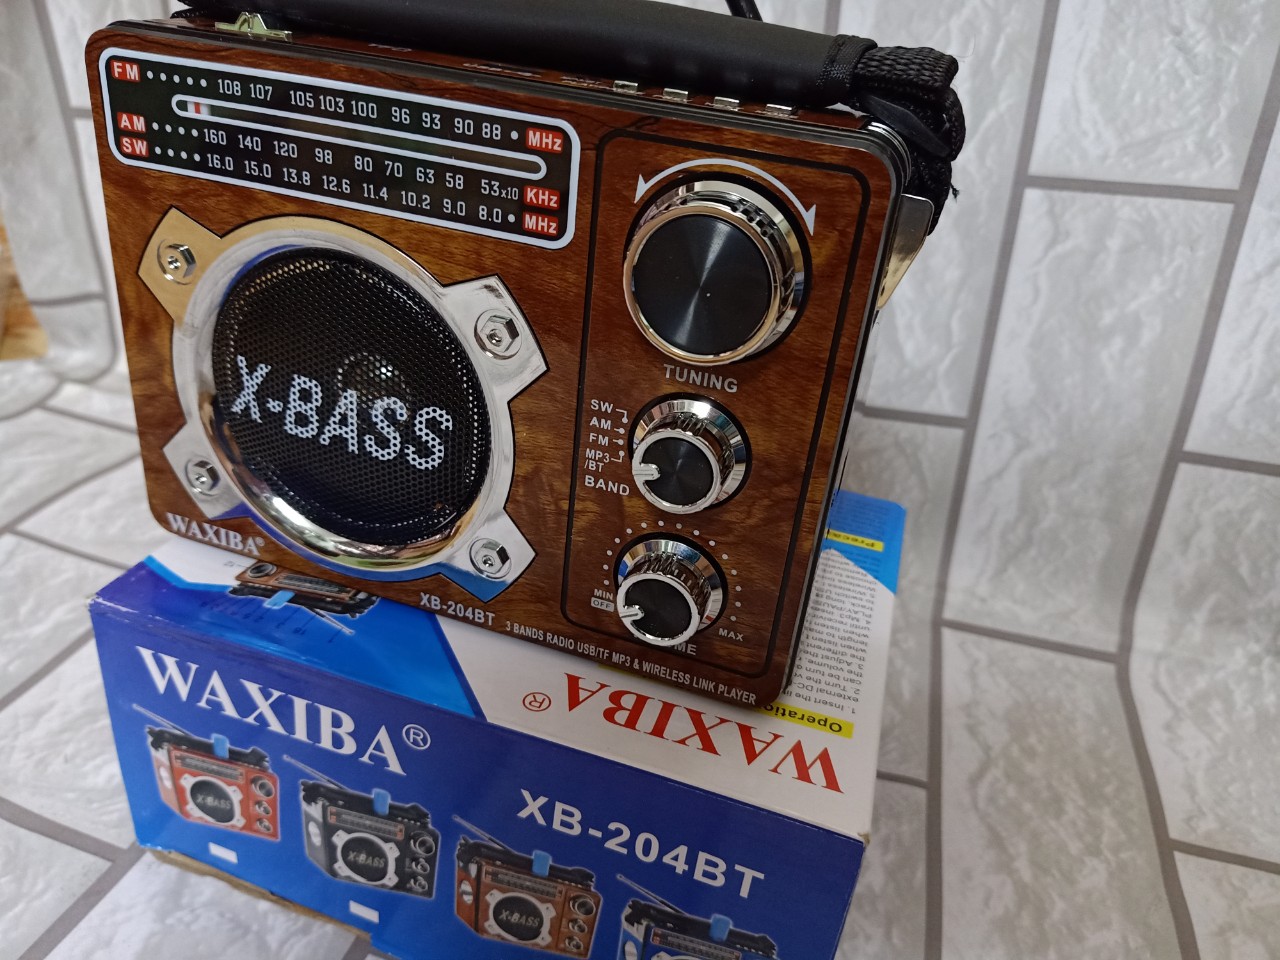 Đài Waxiba XB-204BT LOA SIÊU LỚN EXTRA BASS, USB NGHE NHẠC THẺ NHỚ BLUETOOTH  RADIO AM FM SW CÓ ĐÈN PIN THEO KÈM PIN SẠC HÀNG CHÍNH HÃNG